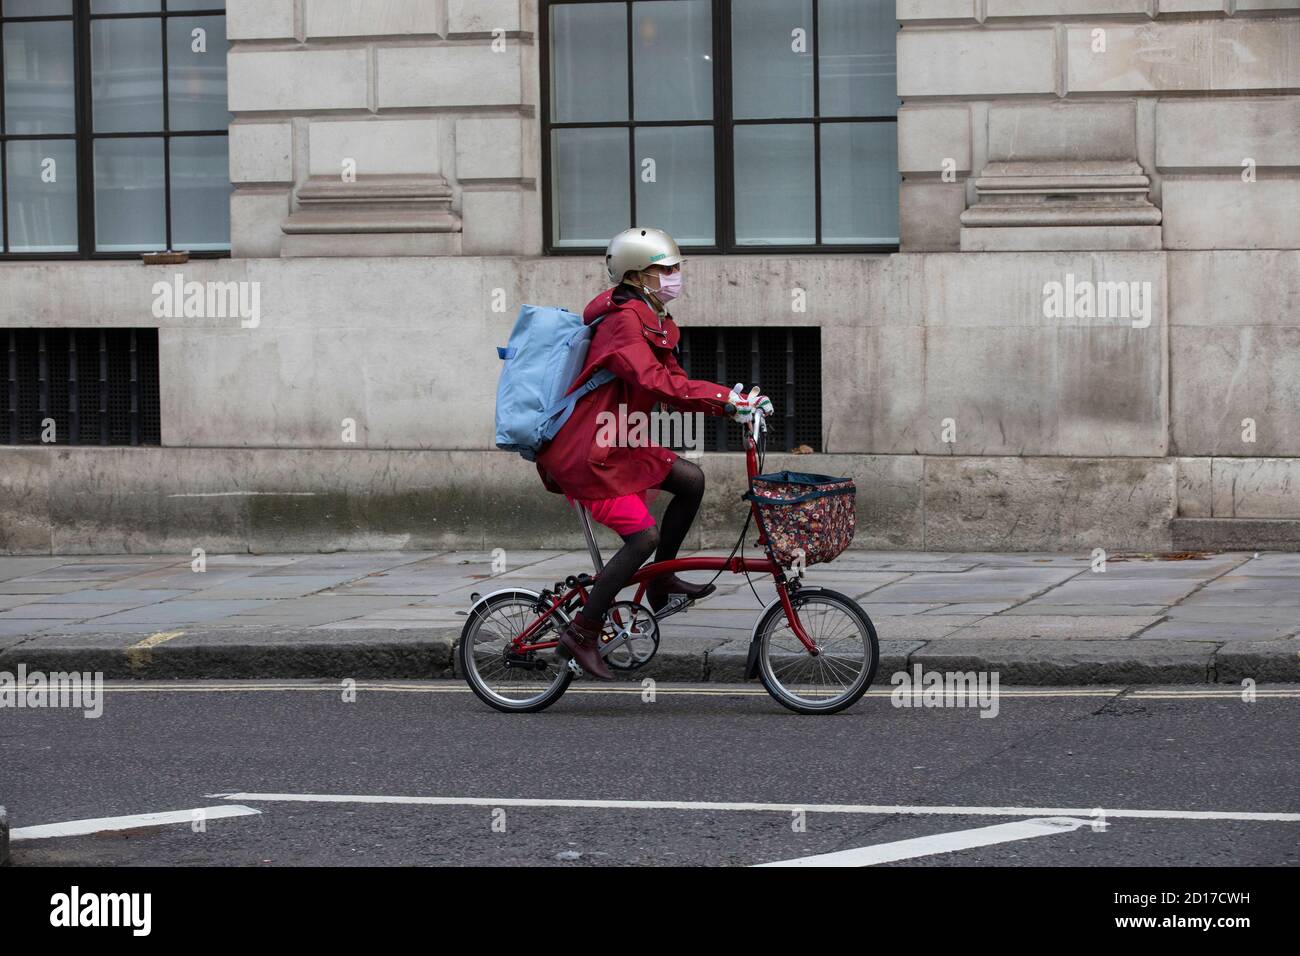 Ein Stadtarbeiter reist weiter in die City of London Zwei Räder während der Finanzkrise der Coronavirus-Pandemie Stockfoto